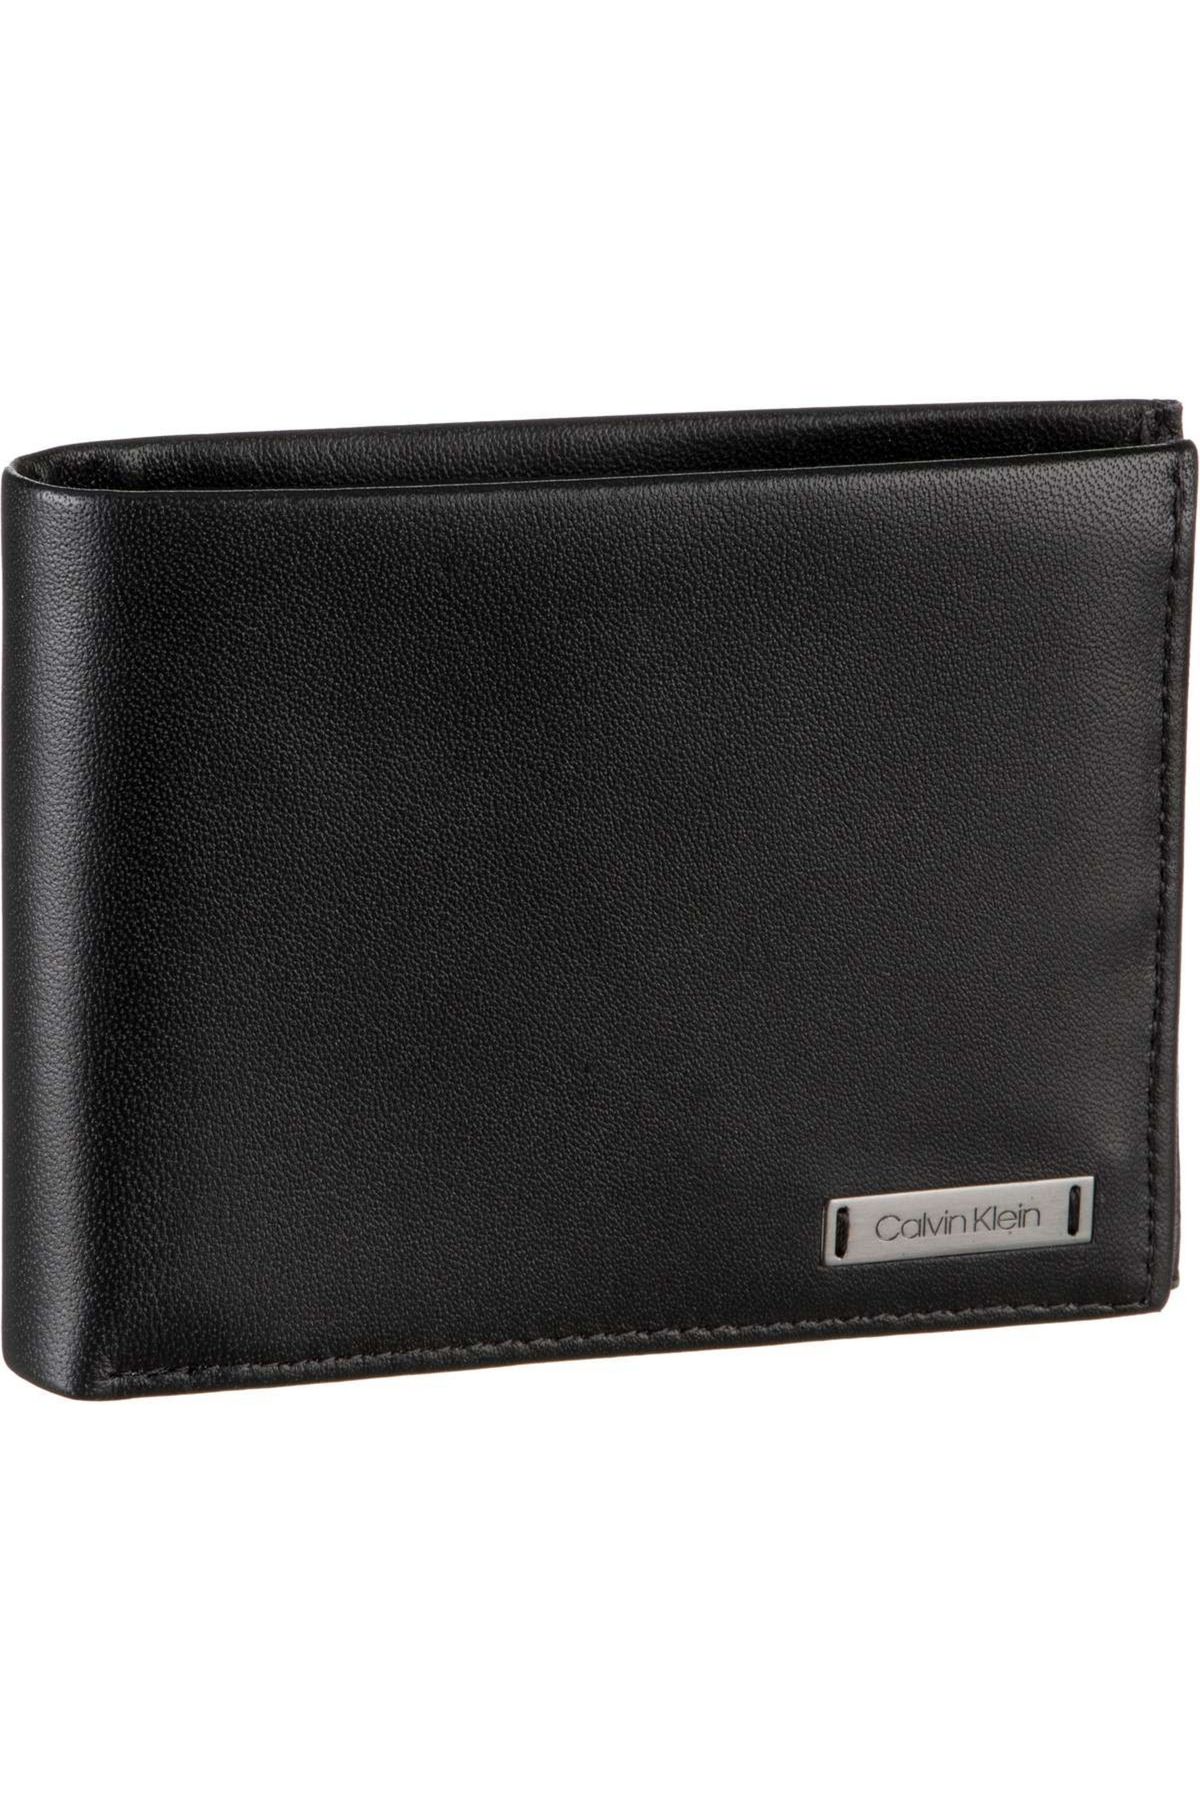 Calvin Klein Geldbörse Wallet With Smooth Trendyol 10CC Plaque Coin 